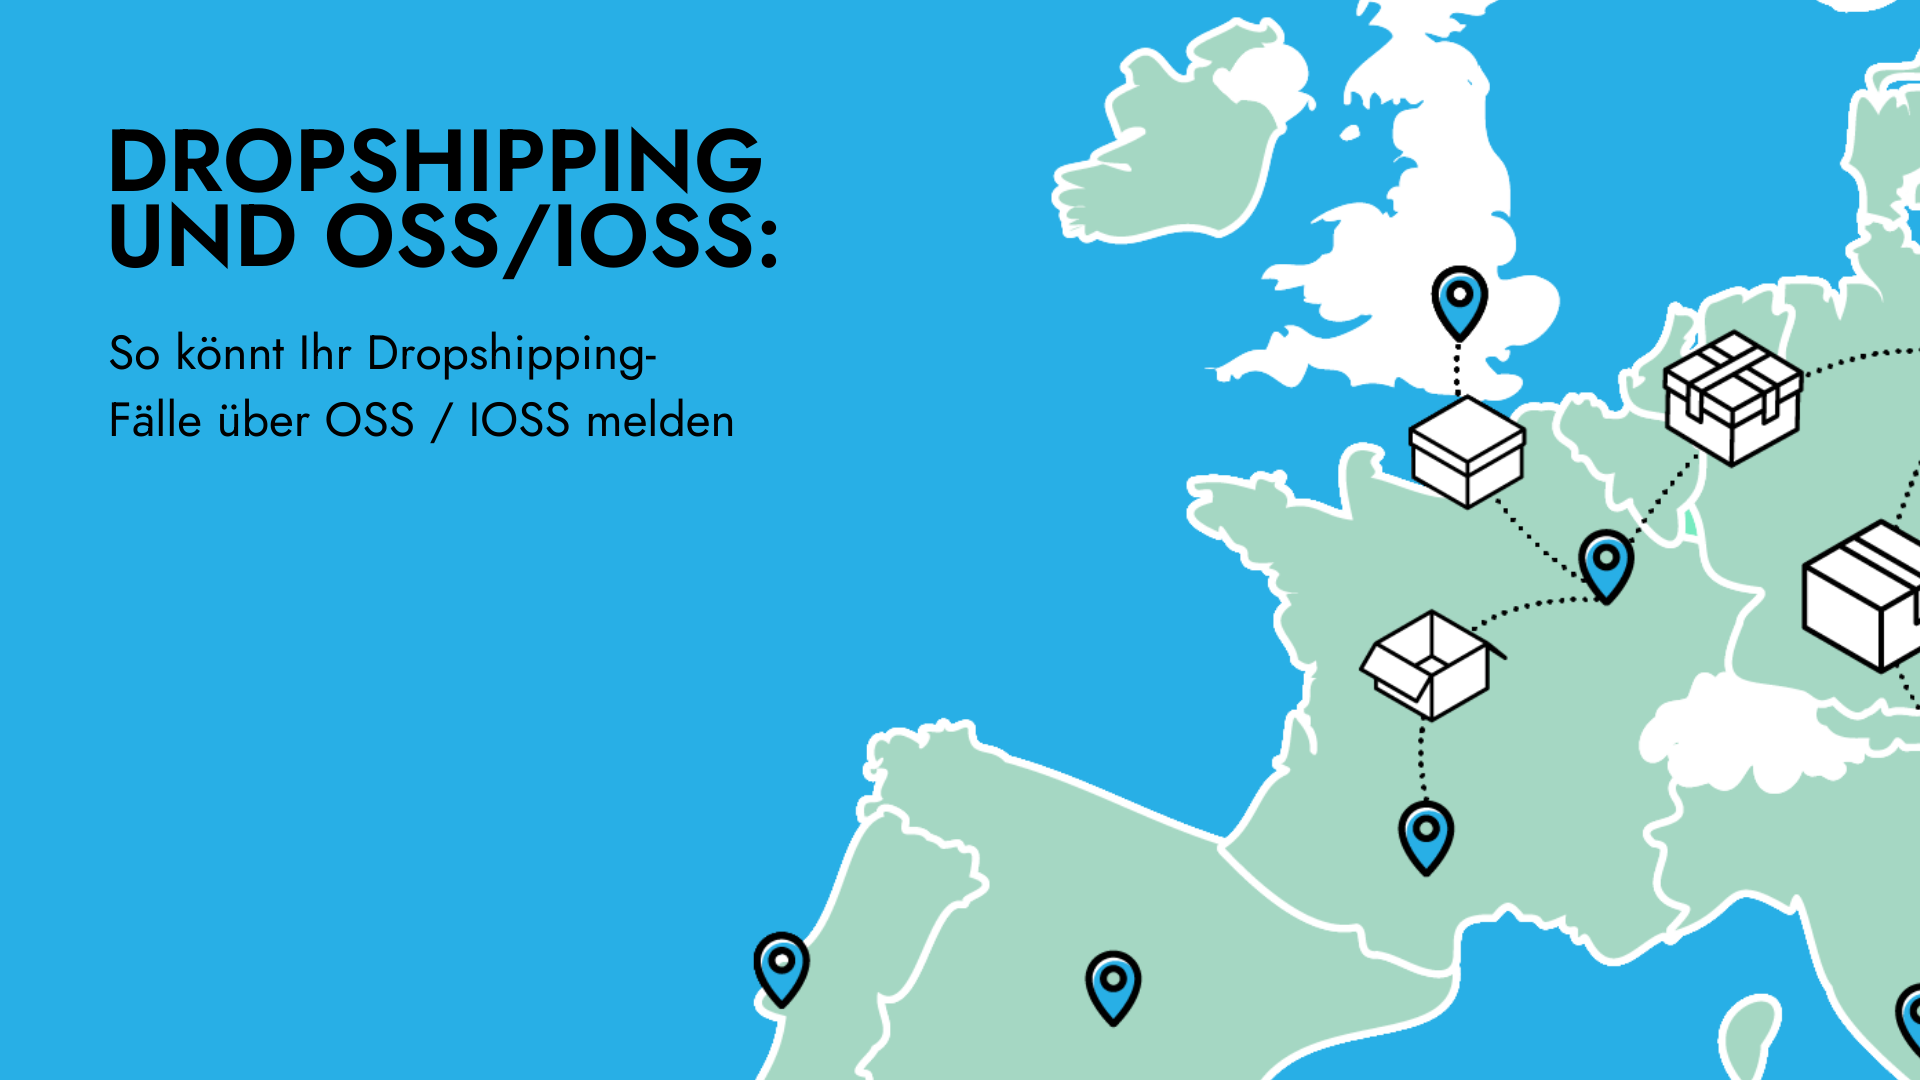 Dropshipping und OSS / IOSS: Nicht alle Lieferungen können darüber gemeldet werden